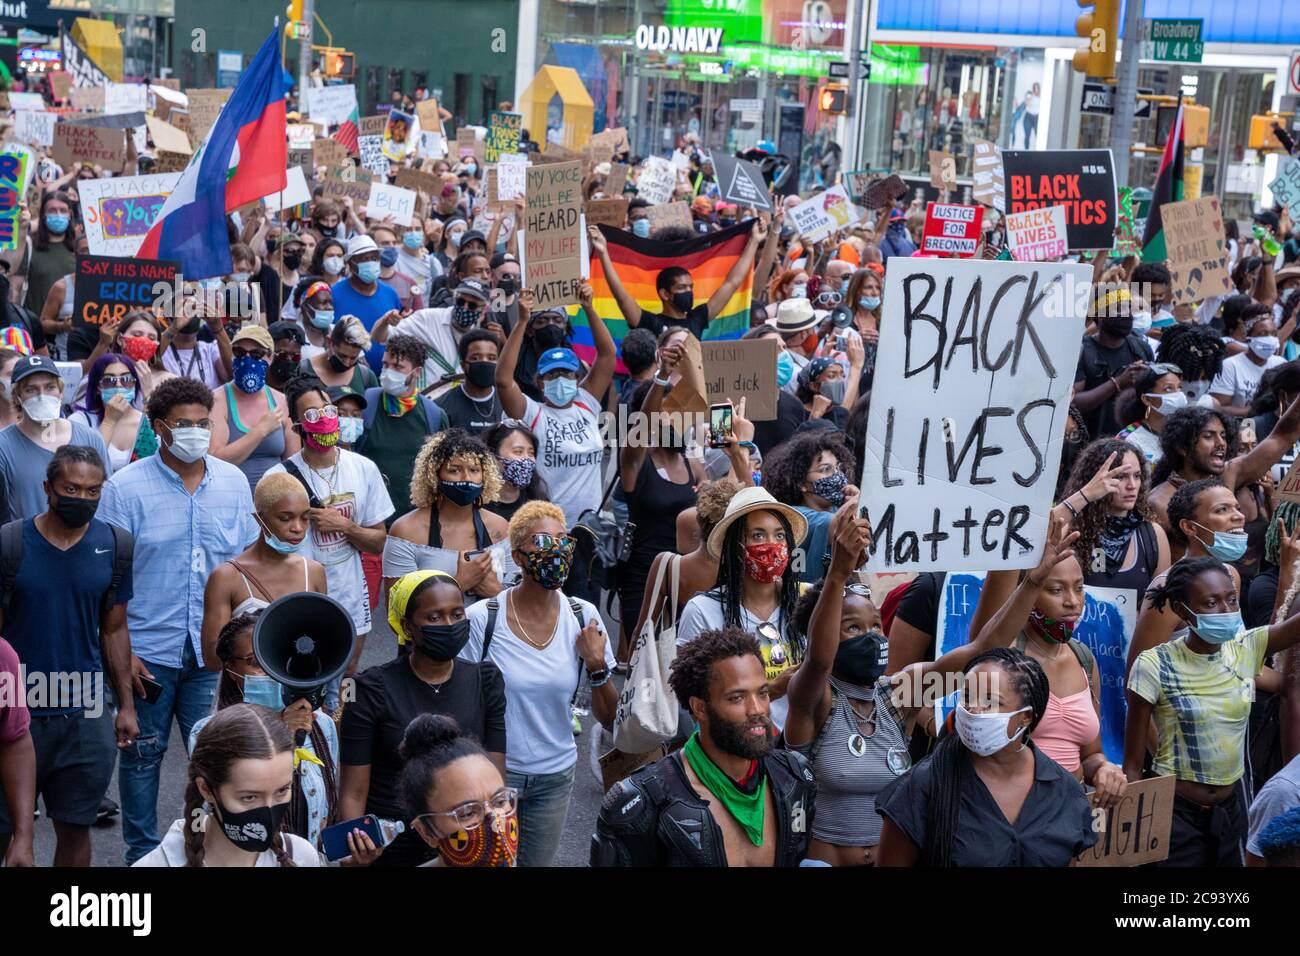 Black Womans/Womxn March Protest Black Lives Matter - foule de gens marchant avec des panneaux et des drapeaux BLM Banque D'Images